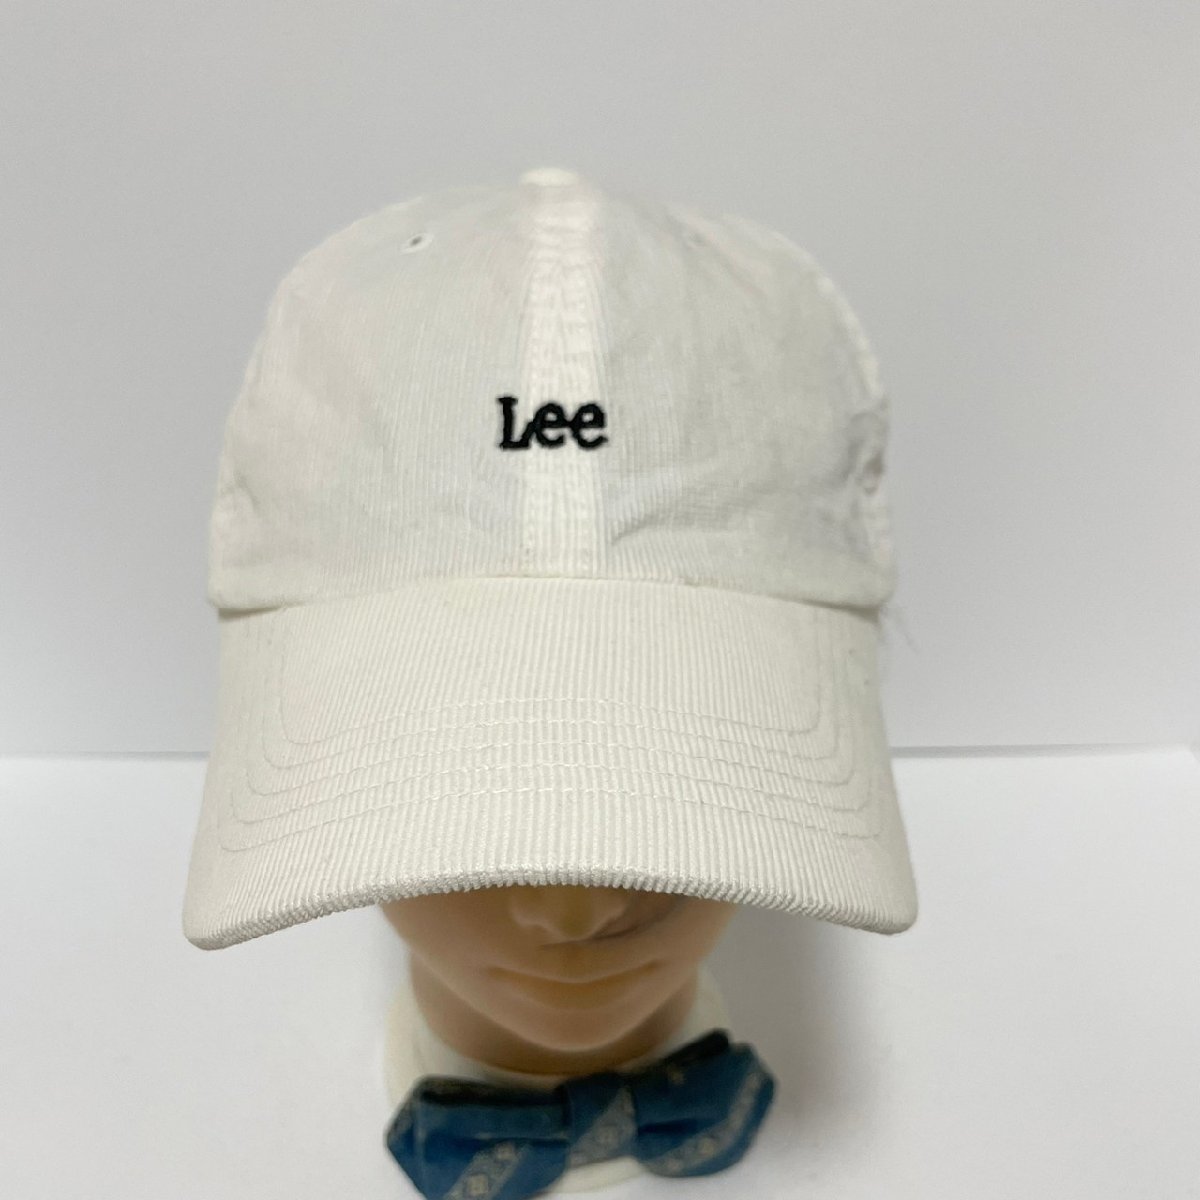 (^w^)b リー 細畝 コーデュロイ キャップ 帽子 ホワイト Lee ロゴ 刺繍 ワンポイント シンプル カジュアル ストラップベルト M C0347EEの画像4